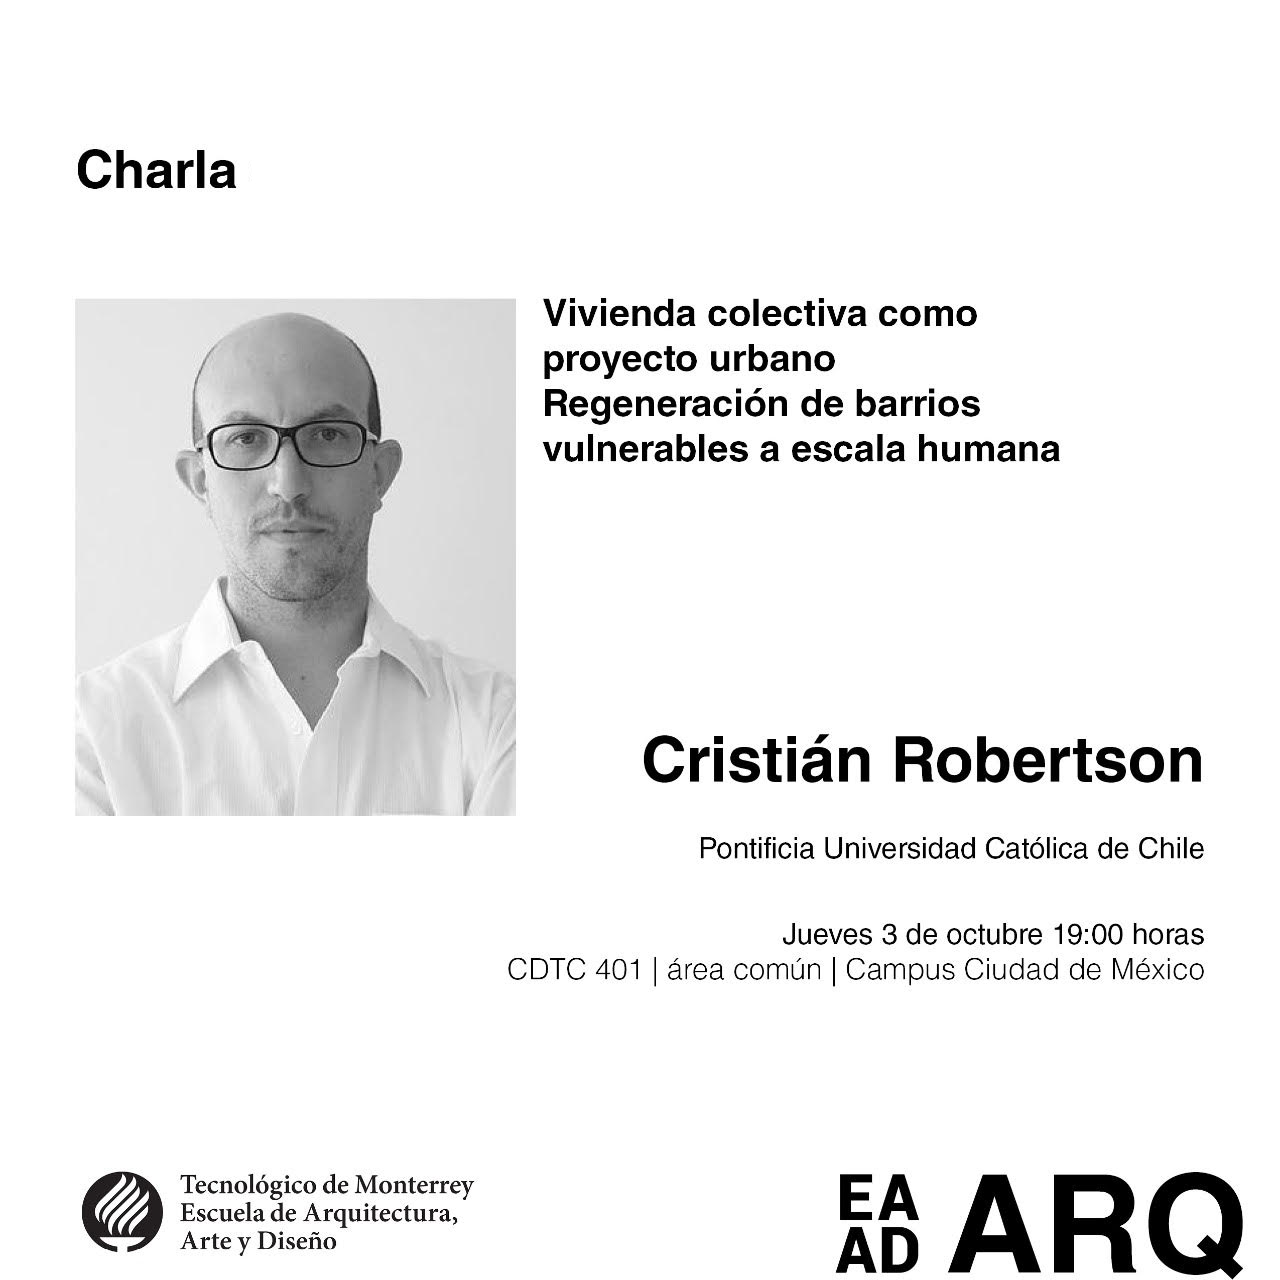 19-10-08_Profesor_ARQ_UC_dicto_una_conferencia_en_la_Escuela_de_Arquitectura_del_Tecnologico_de_Monterrey_CDMX.jpg